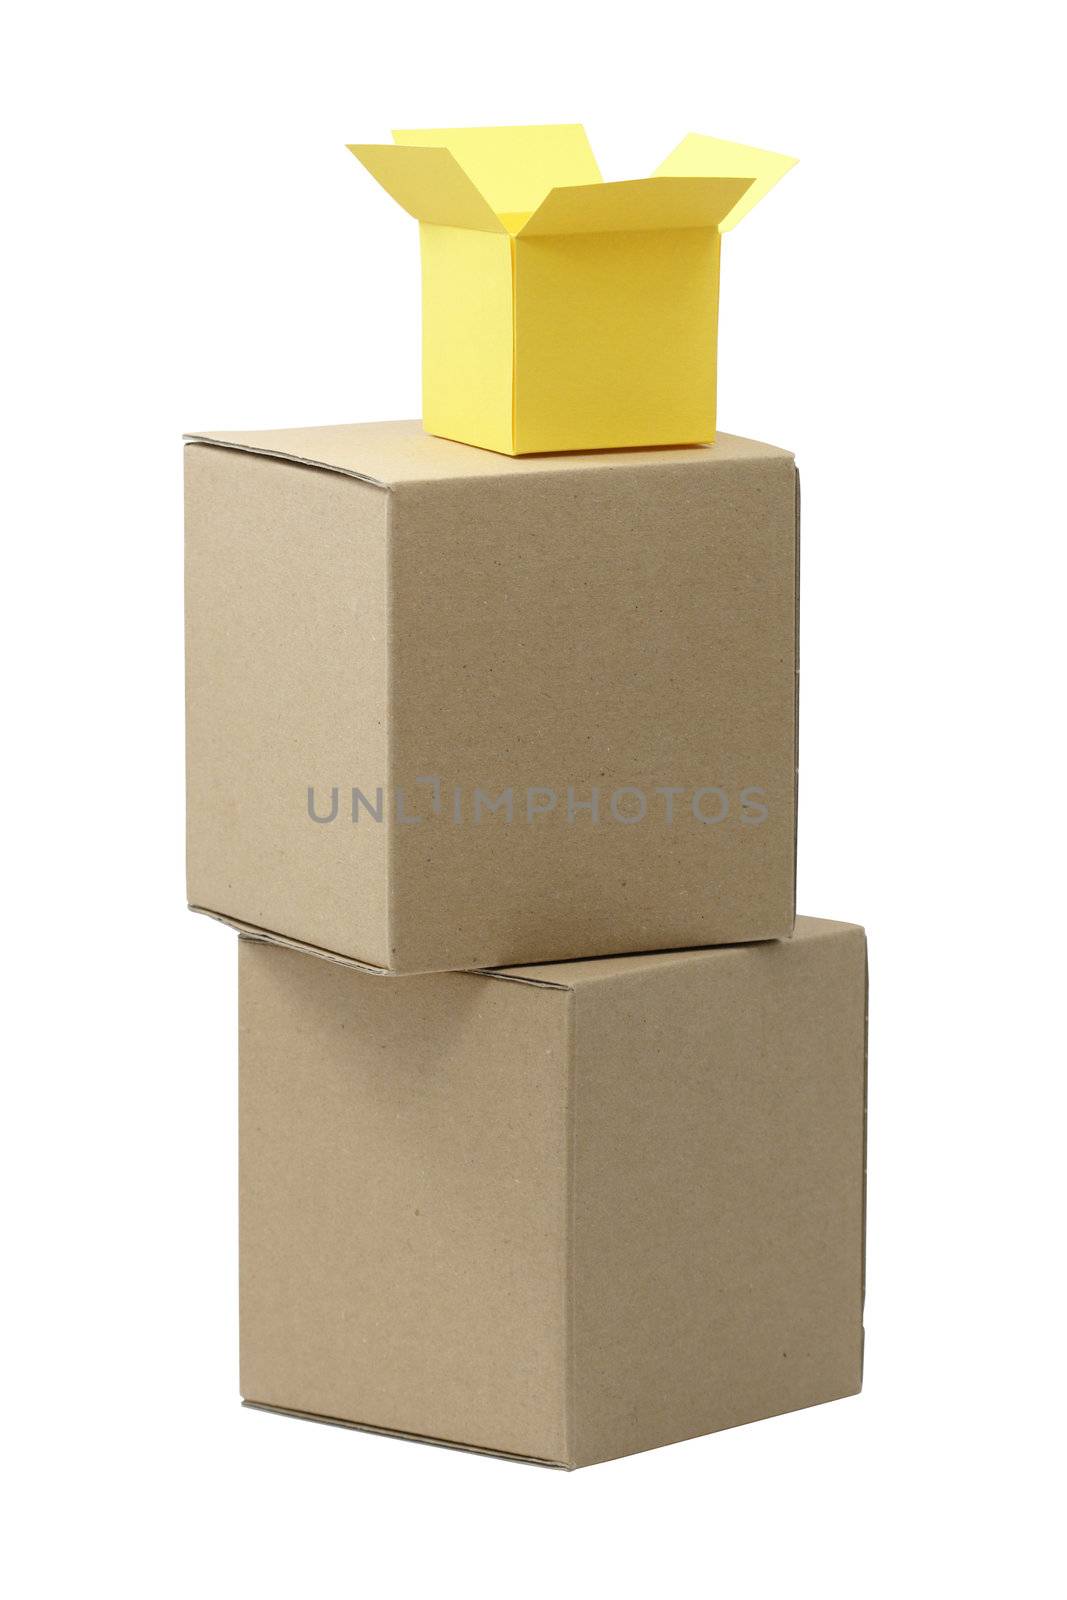 Cardboard Packages by kvkirillov